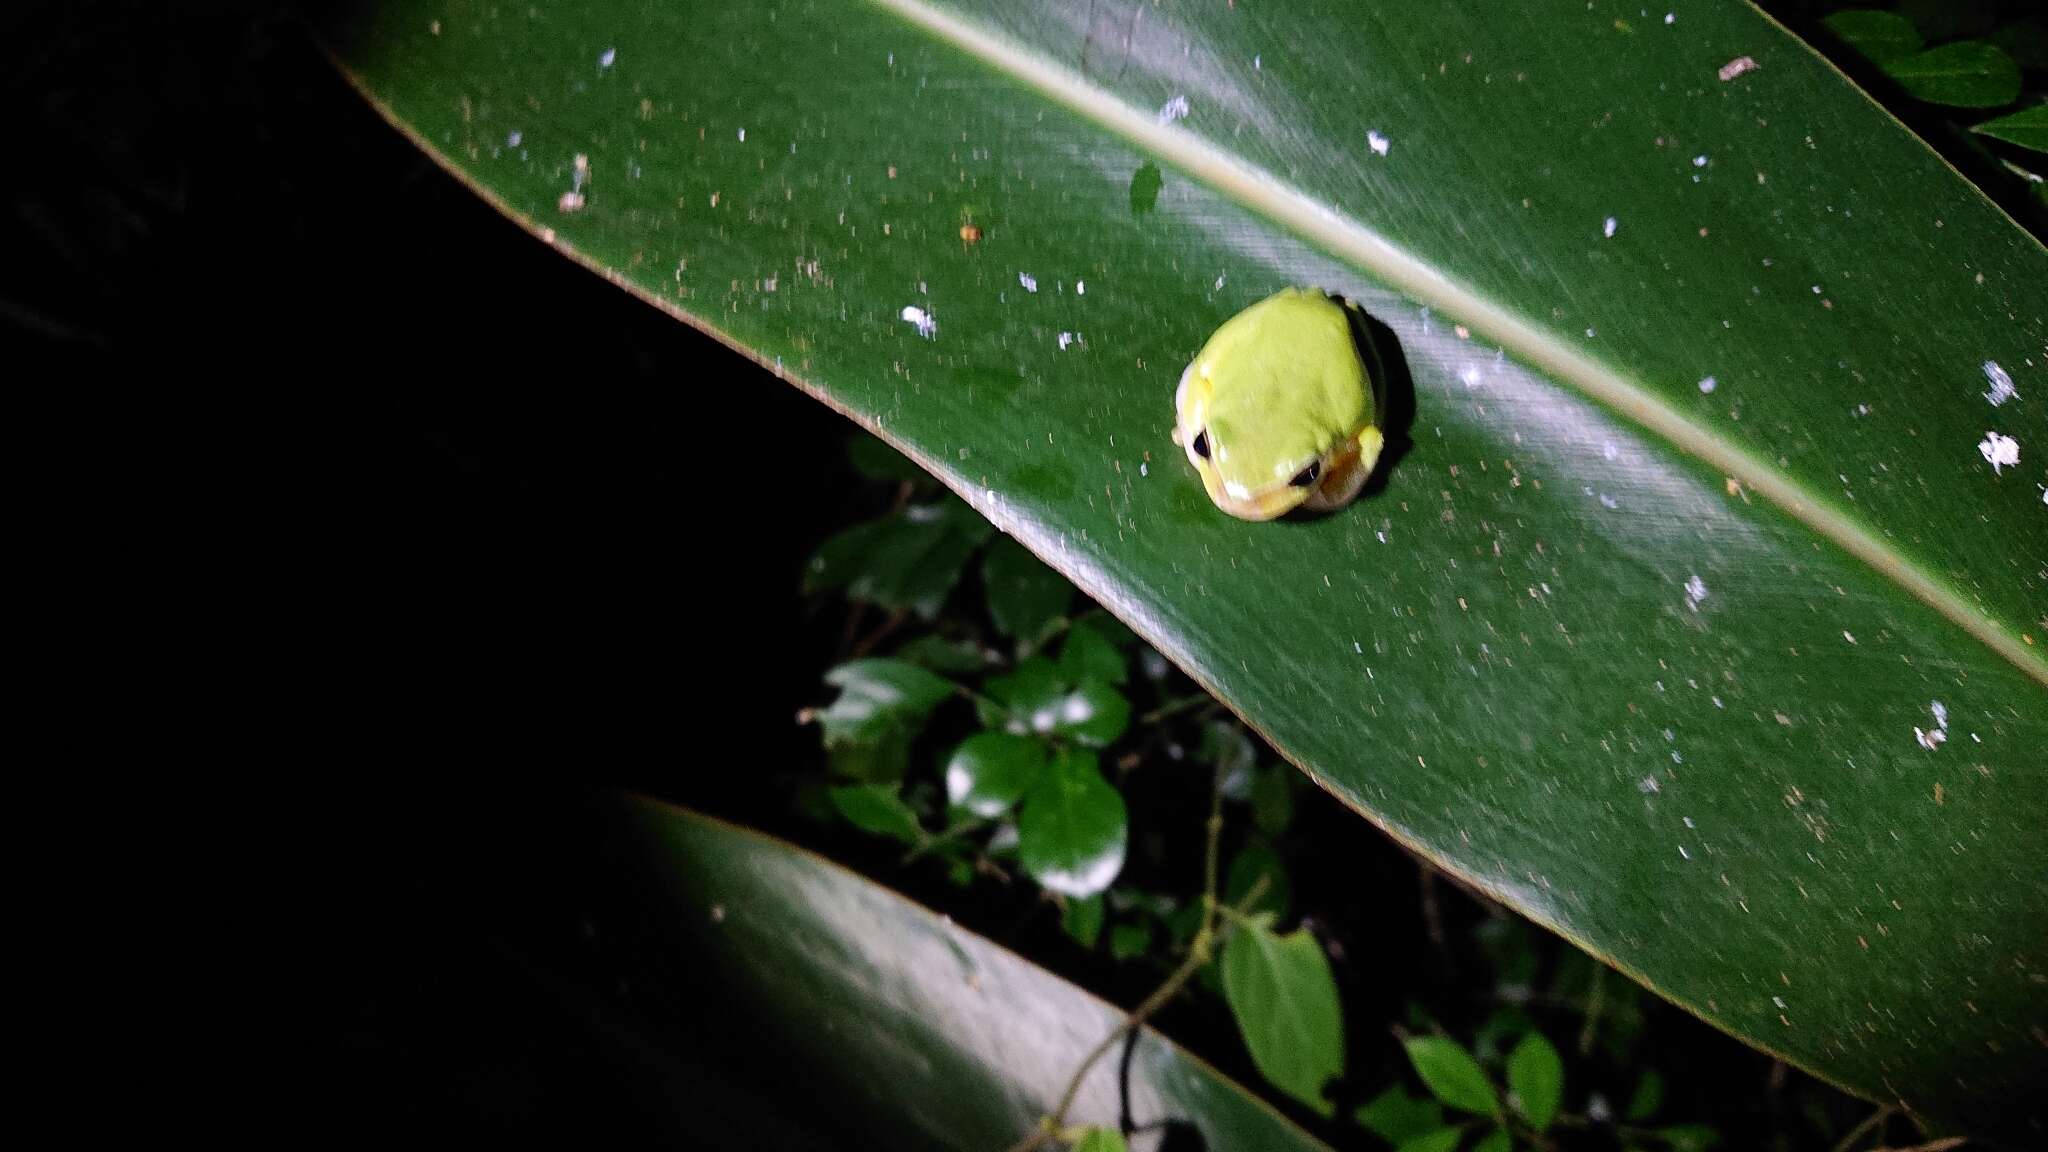 Image of Taipei tree frog